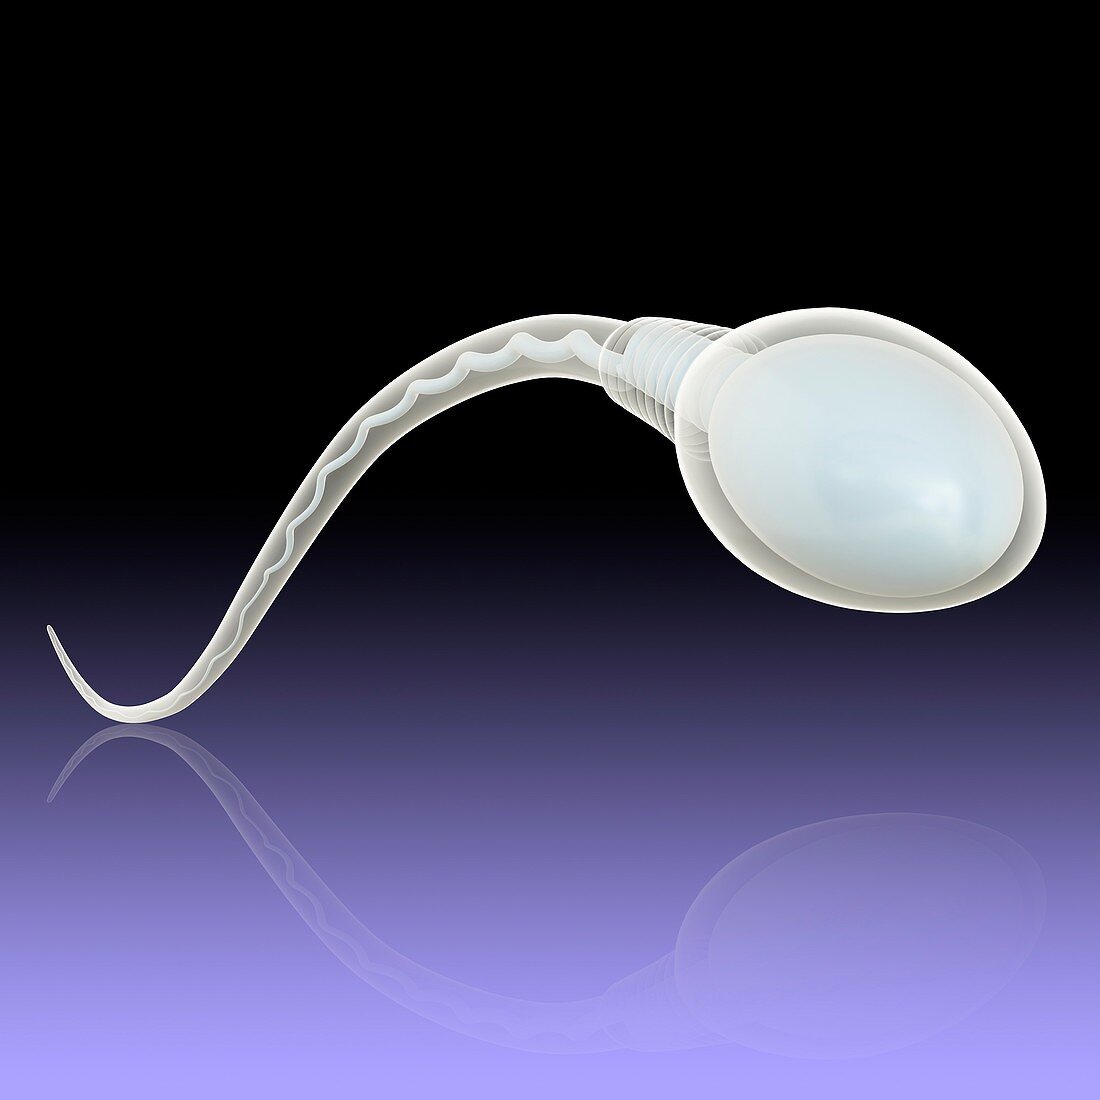 Sperm sex cell, illustration